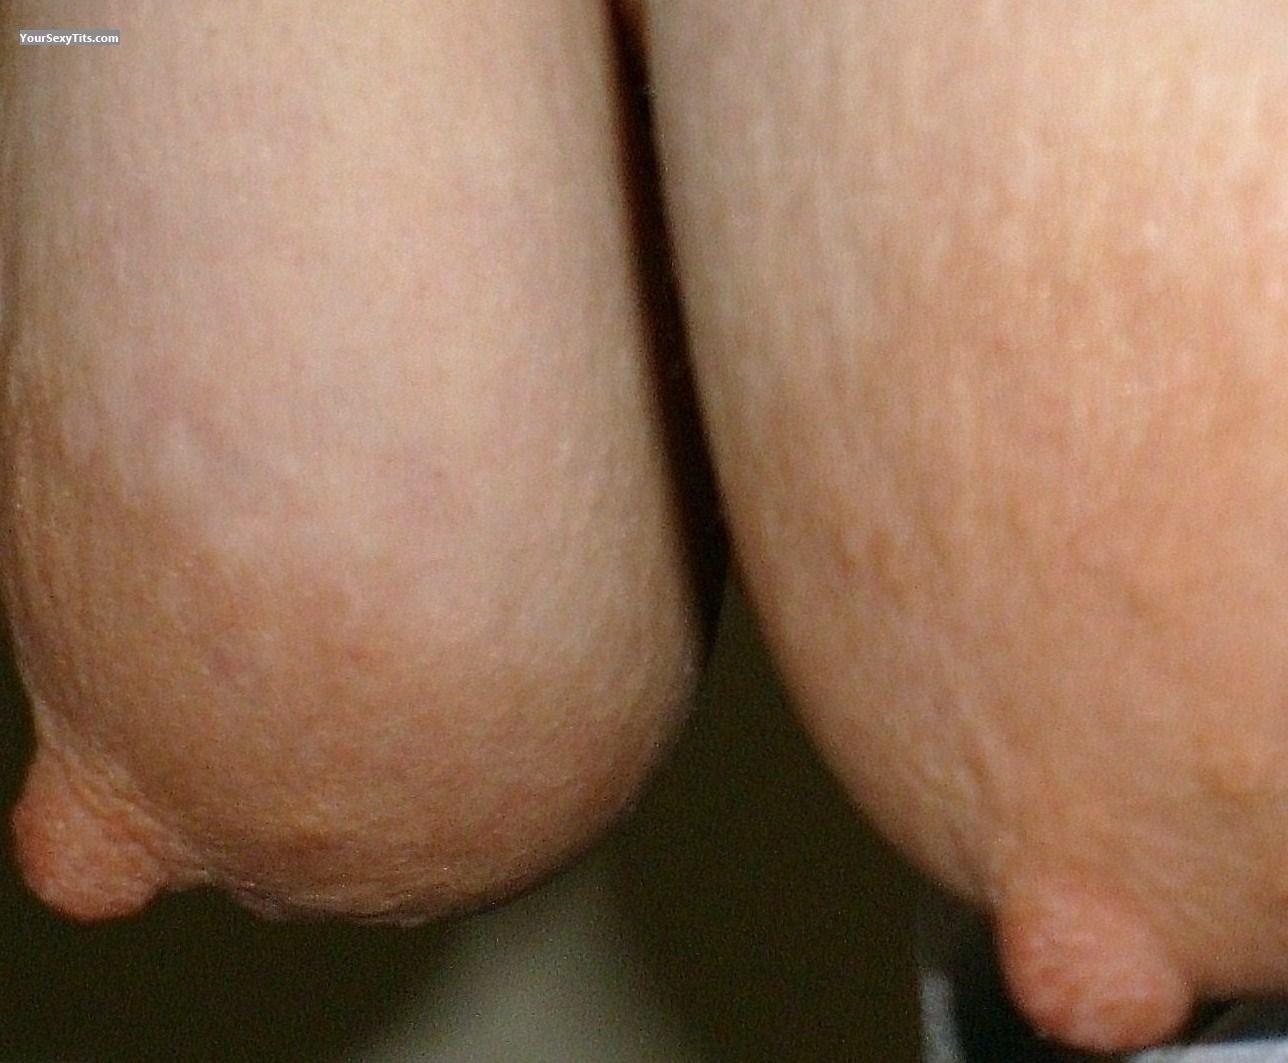 Tit Flash: Big Tits - Momma Tits from United States